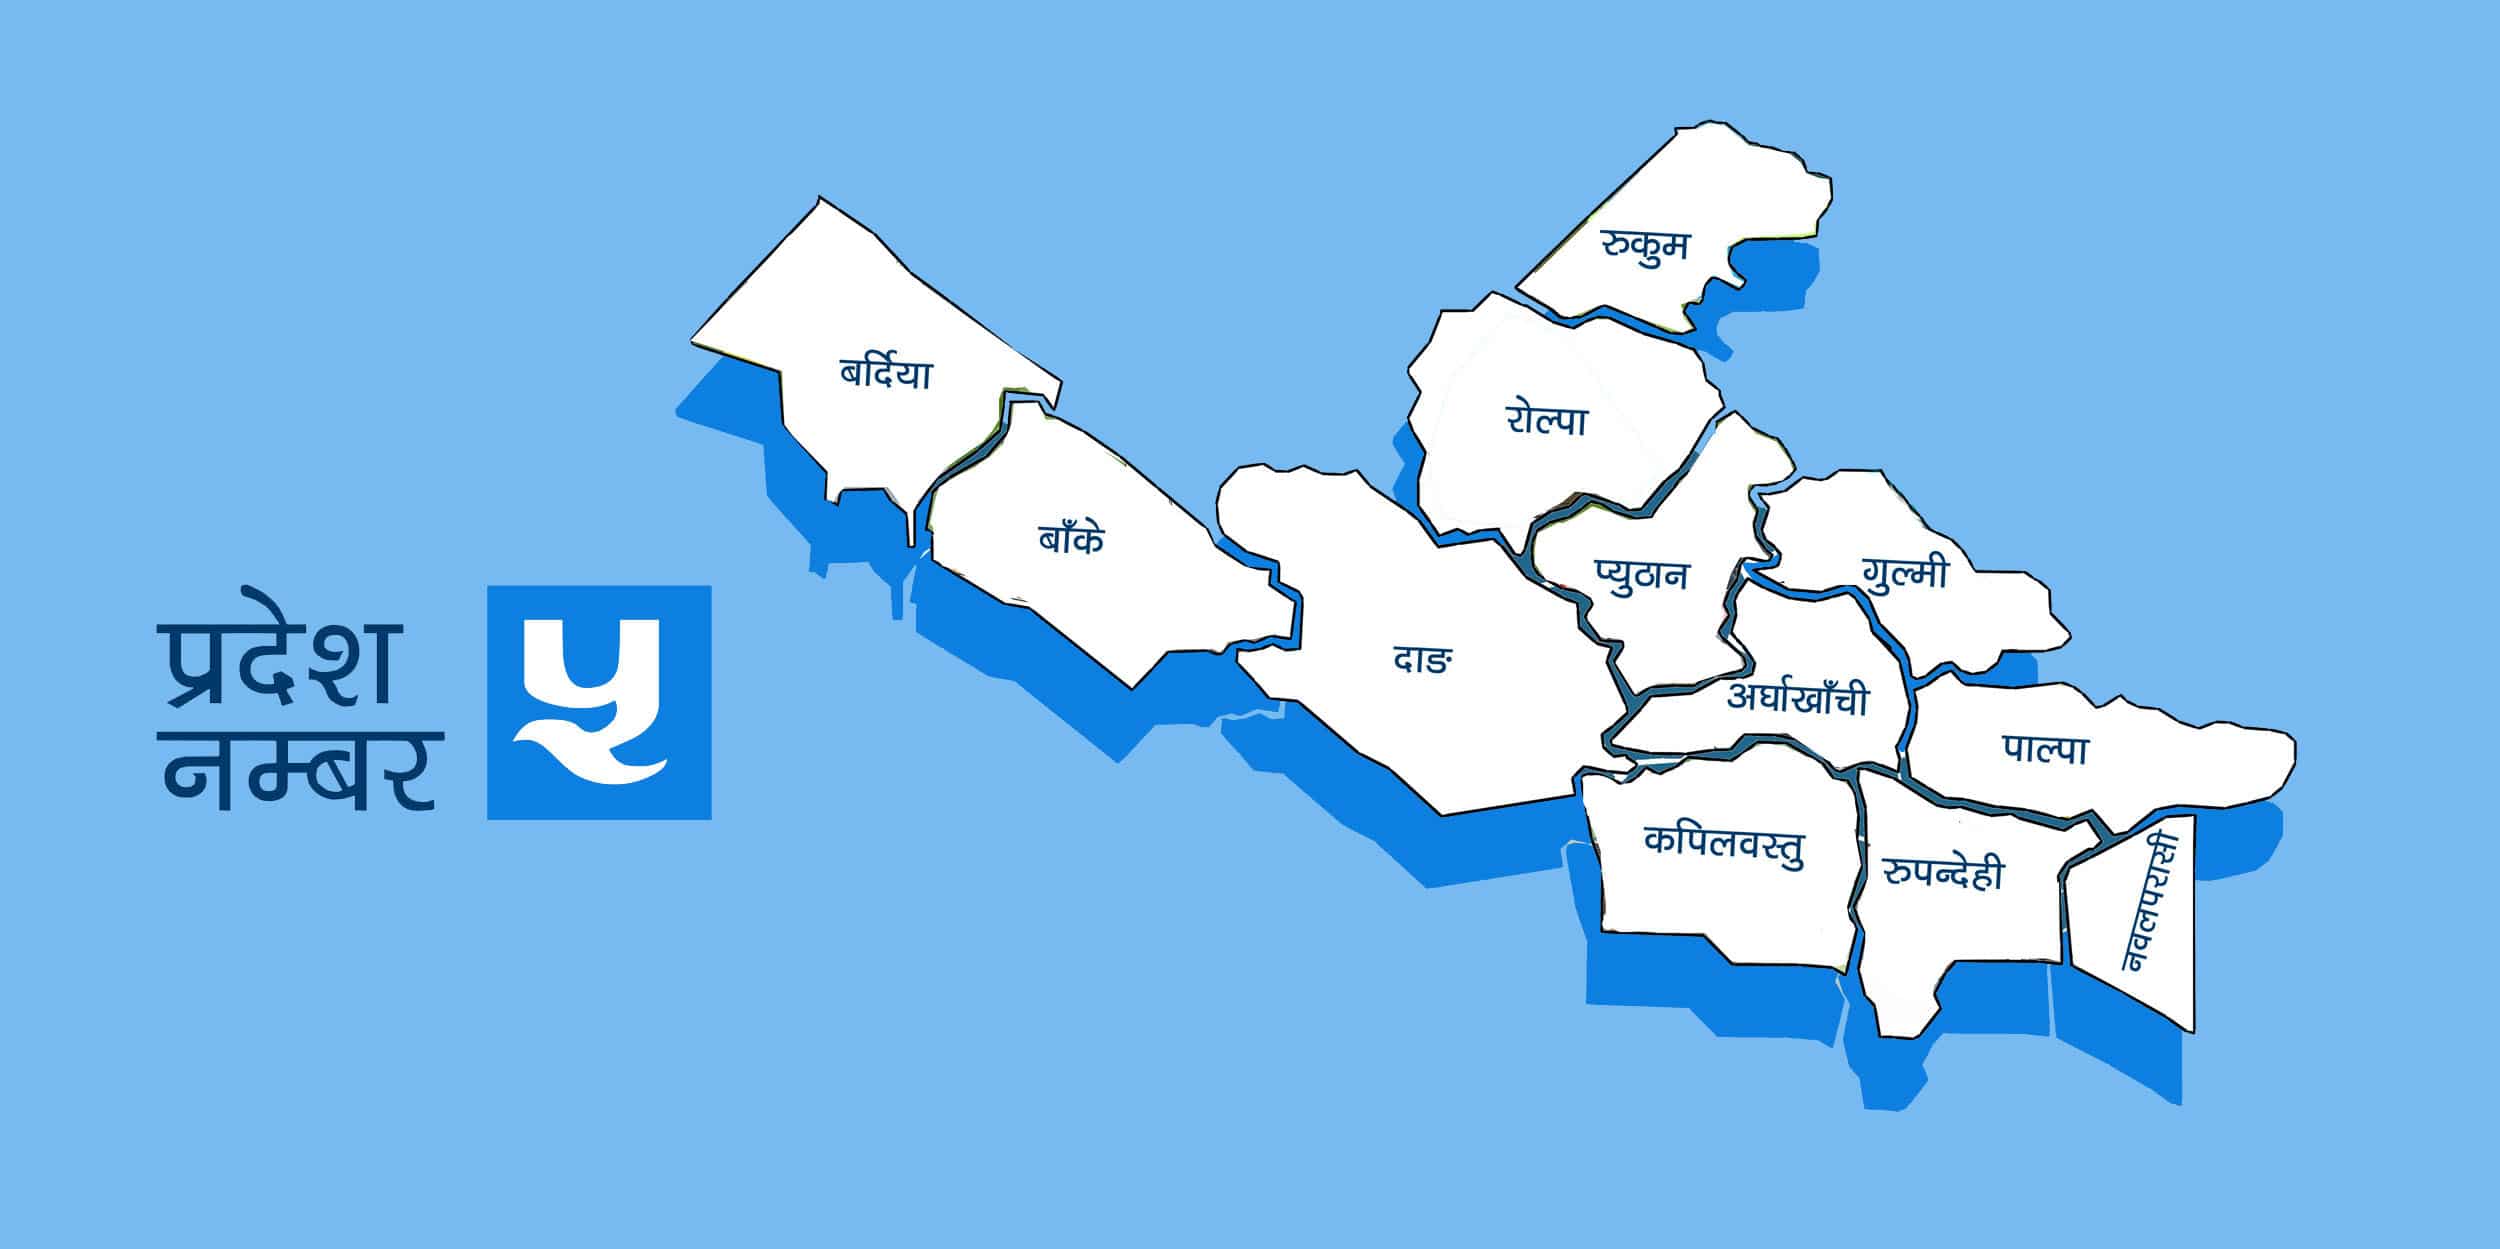 प्रदेश-५ को नाम लुम्बिनी र राजधानी भालुवाङ बनाउने नेकपाको प्रस्ताव